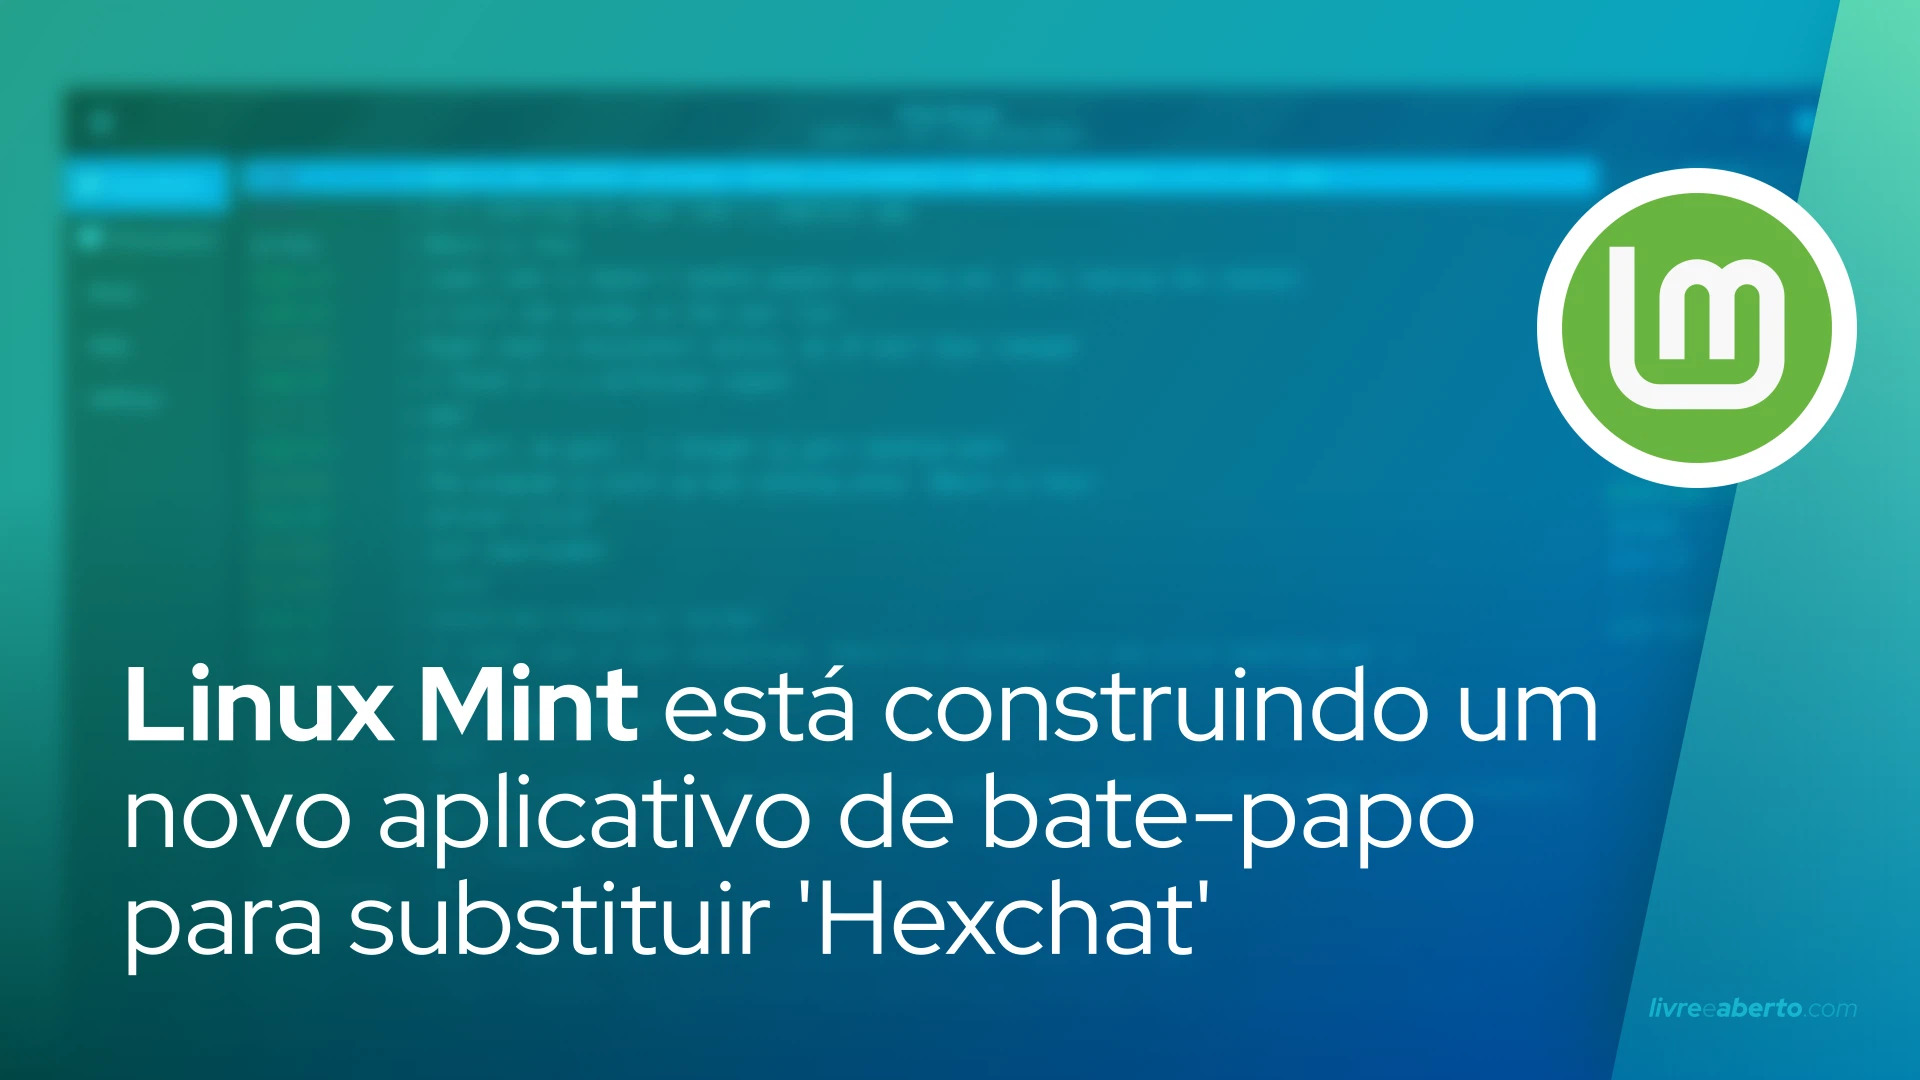 Linux Mint está construindo um novo aplicativo de bate-papo para substituir 'Hexchat'